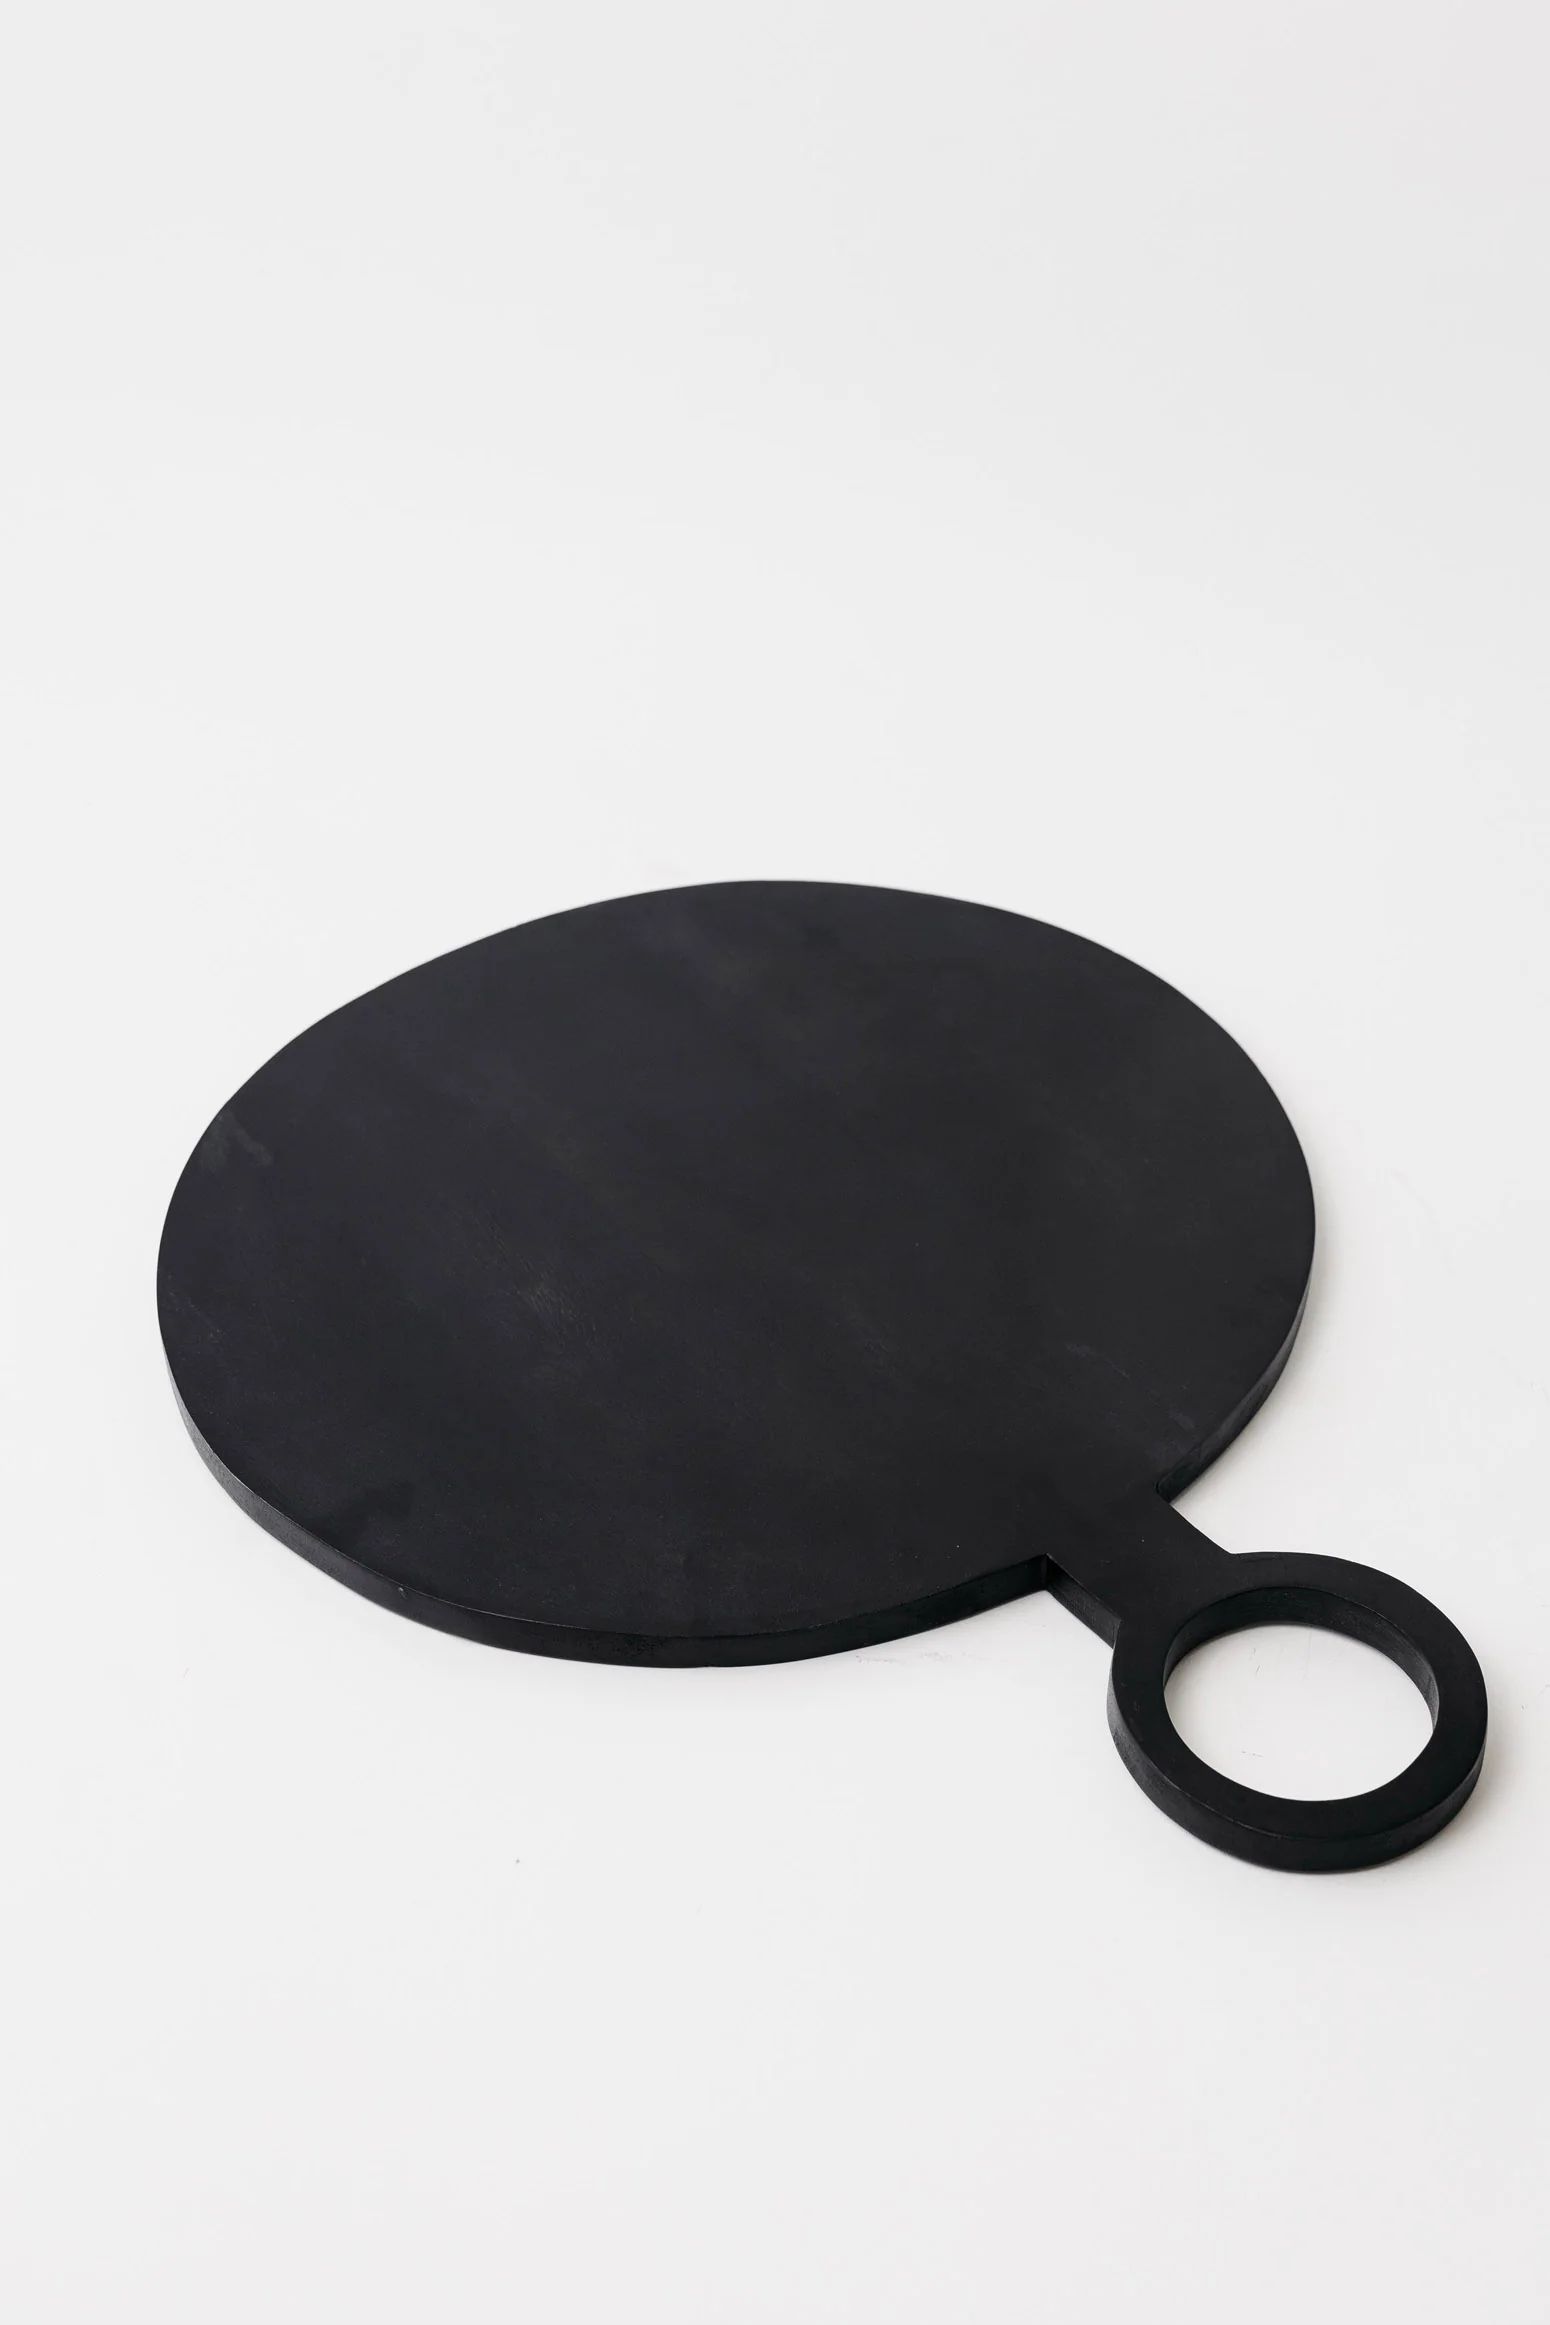 Mina Mango Board - Black - 2 Sizes | THELIFESTYLEDCO